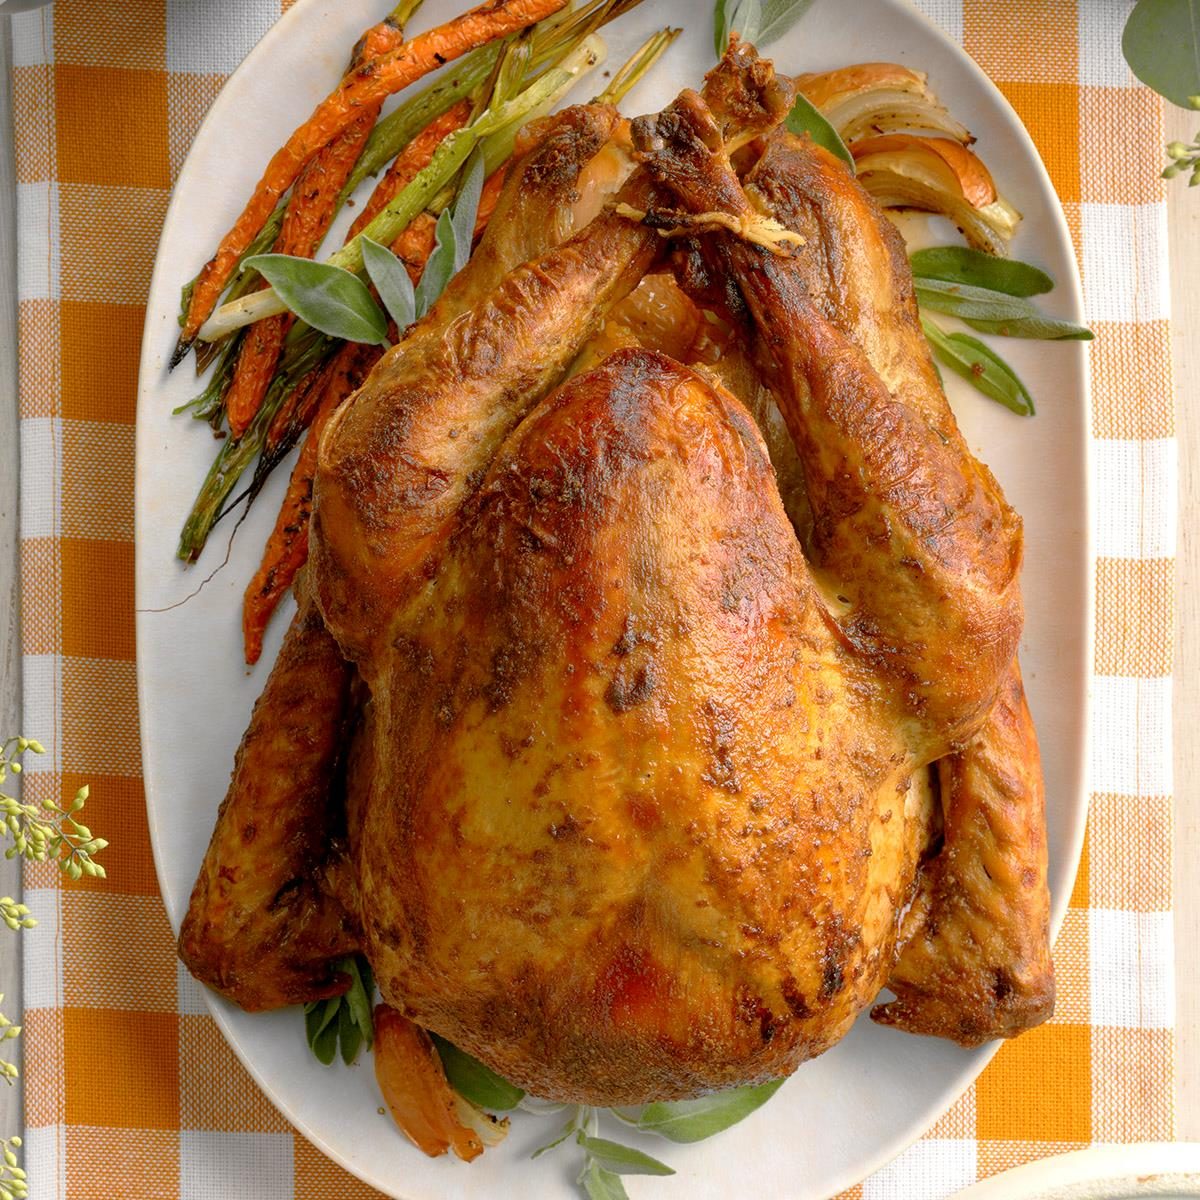 Juicy roast turkey